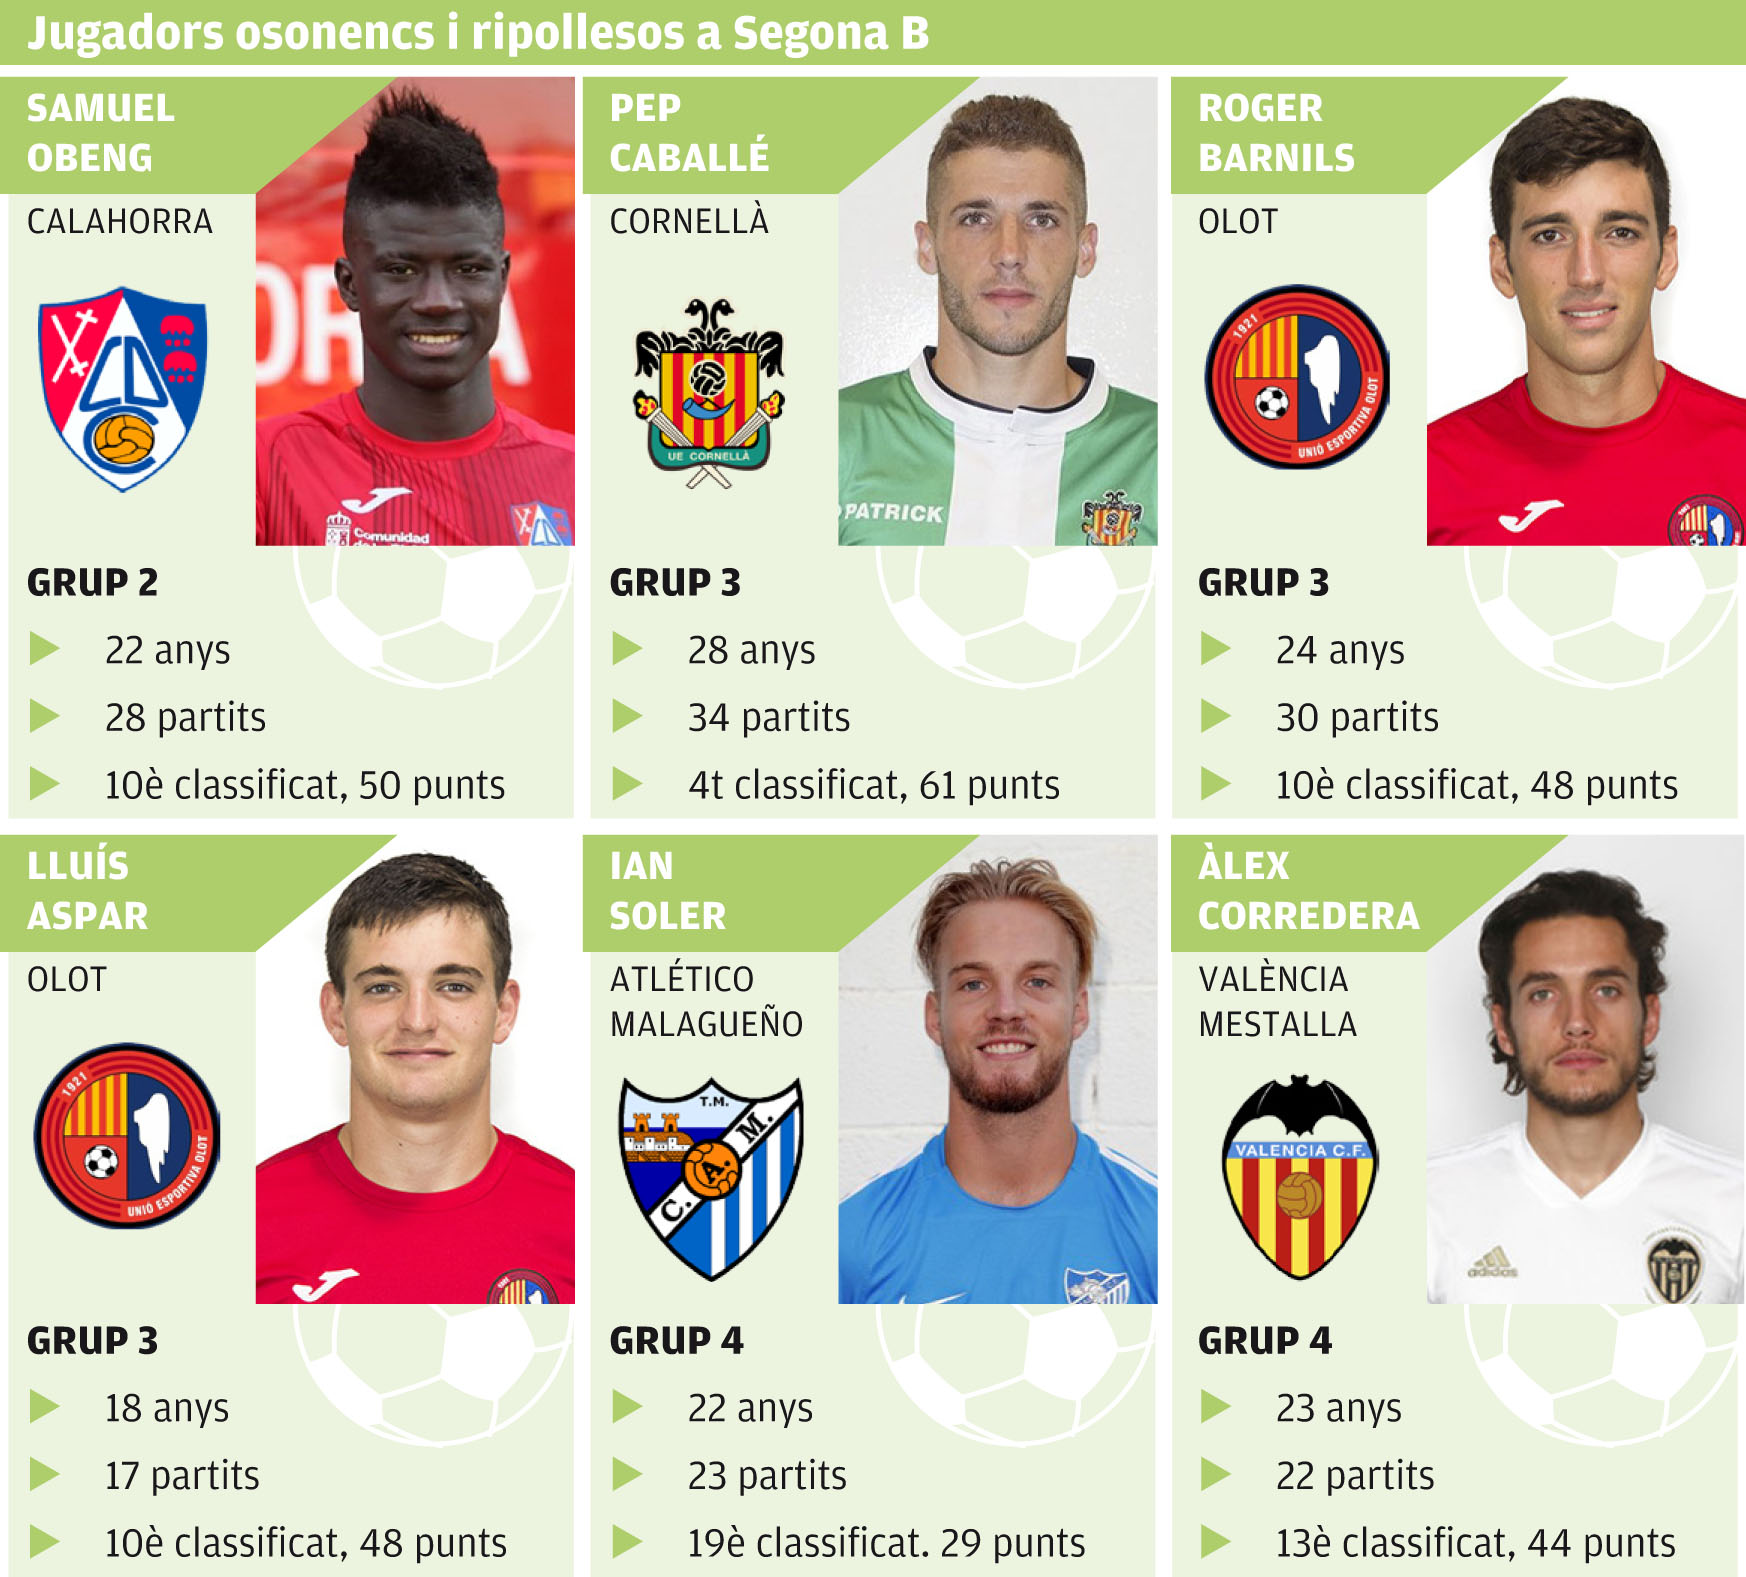 Quadre resum dels futbolistes d'Osona i el Ripollès a Segona B